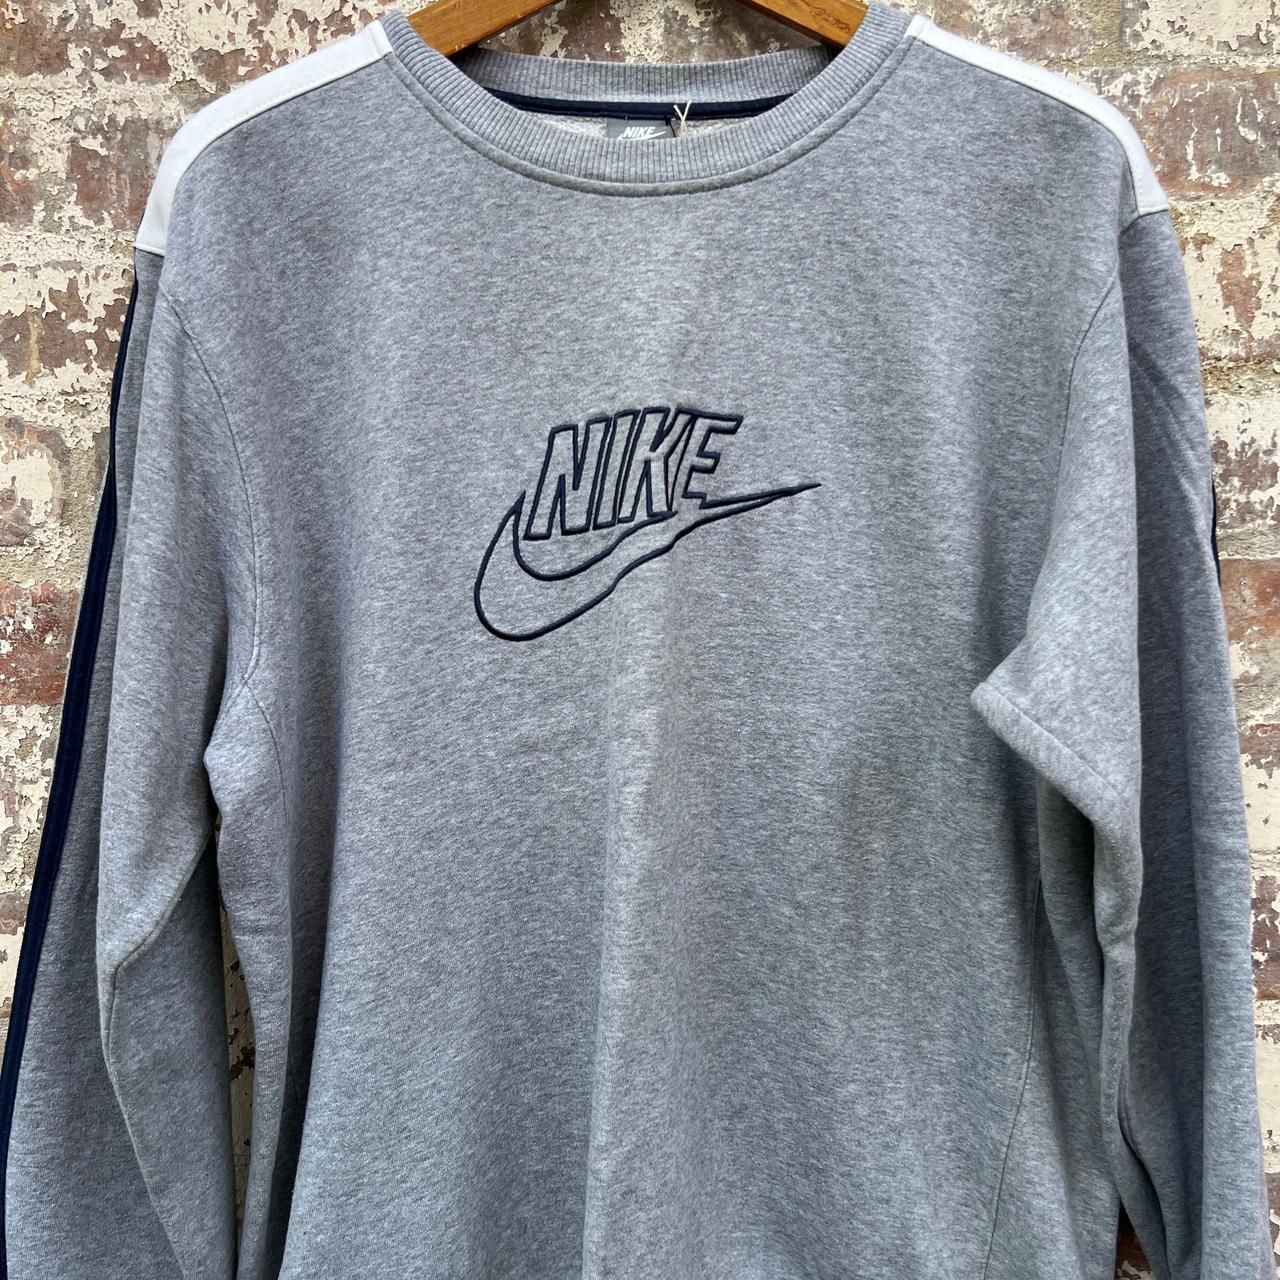 2000s Grey Nike Print Sweatshirt Vintage Grey... - Depop